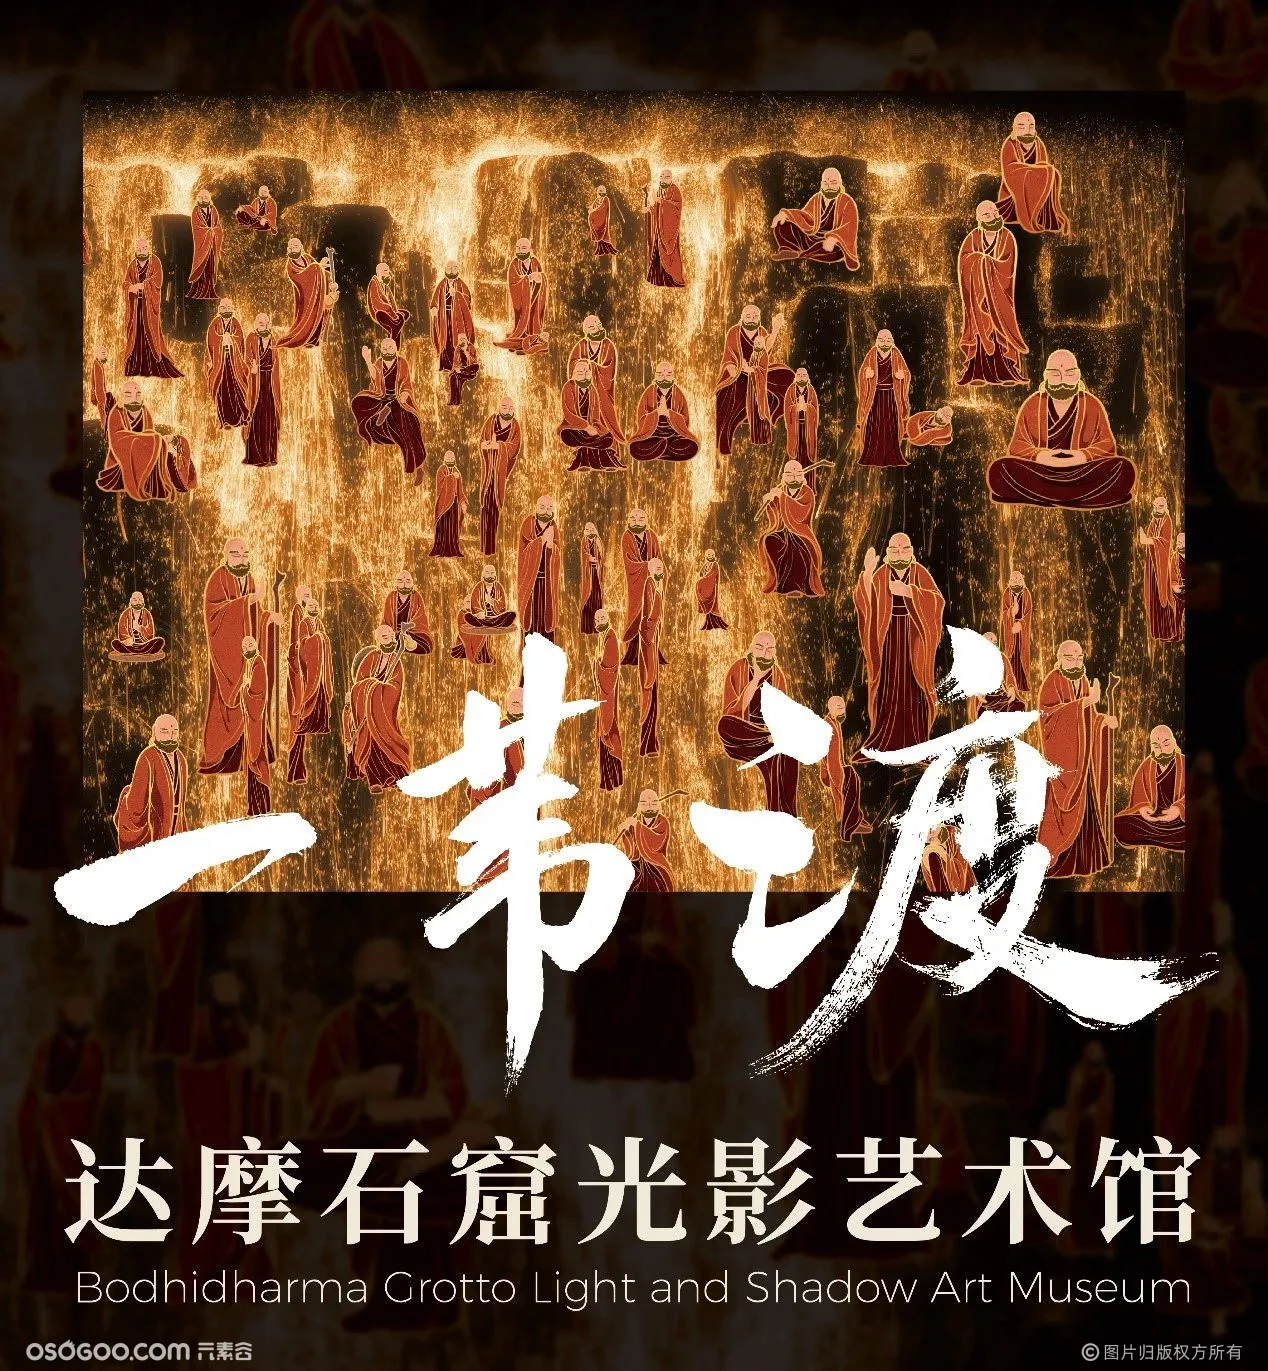 中国首个沉浸式达摩石窟光影艺术馆空降南京！